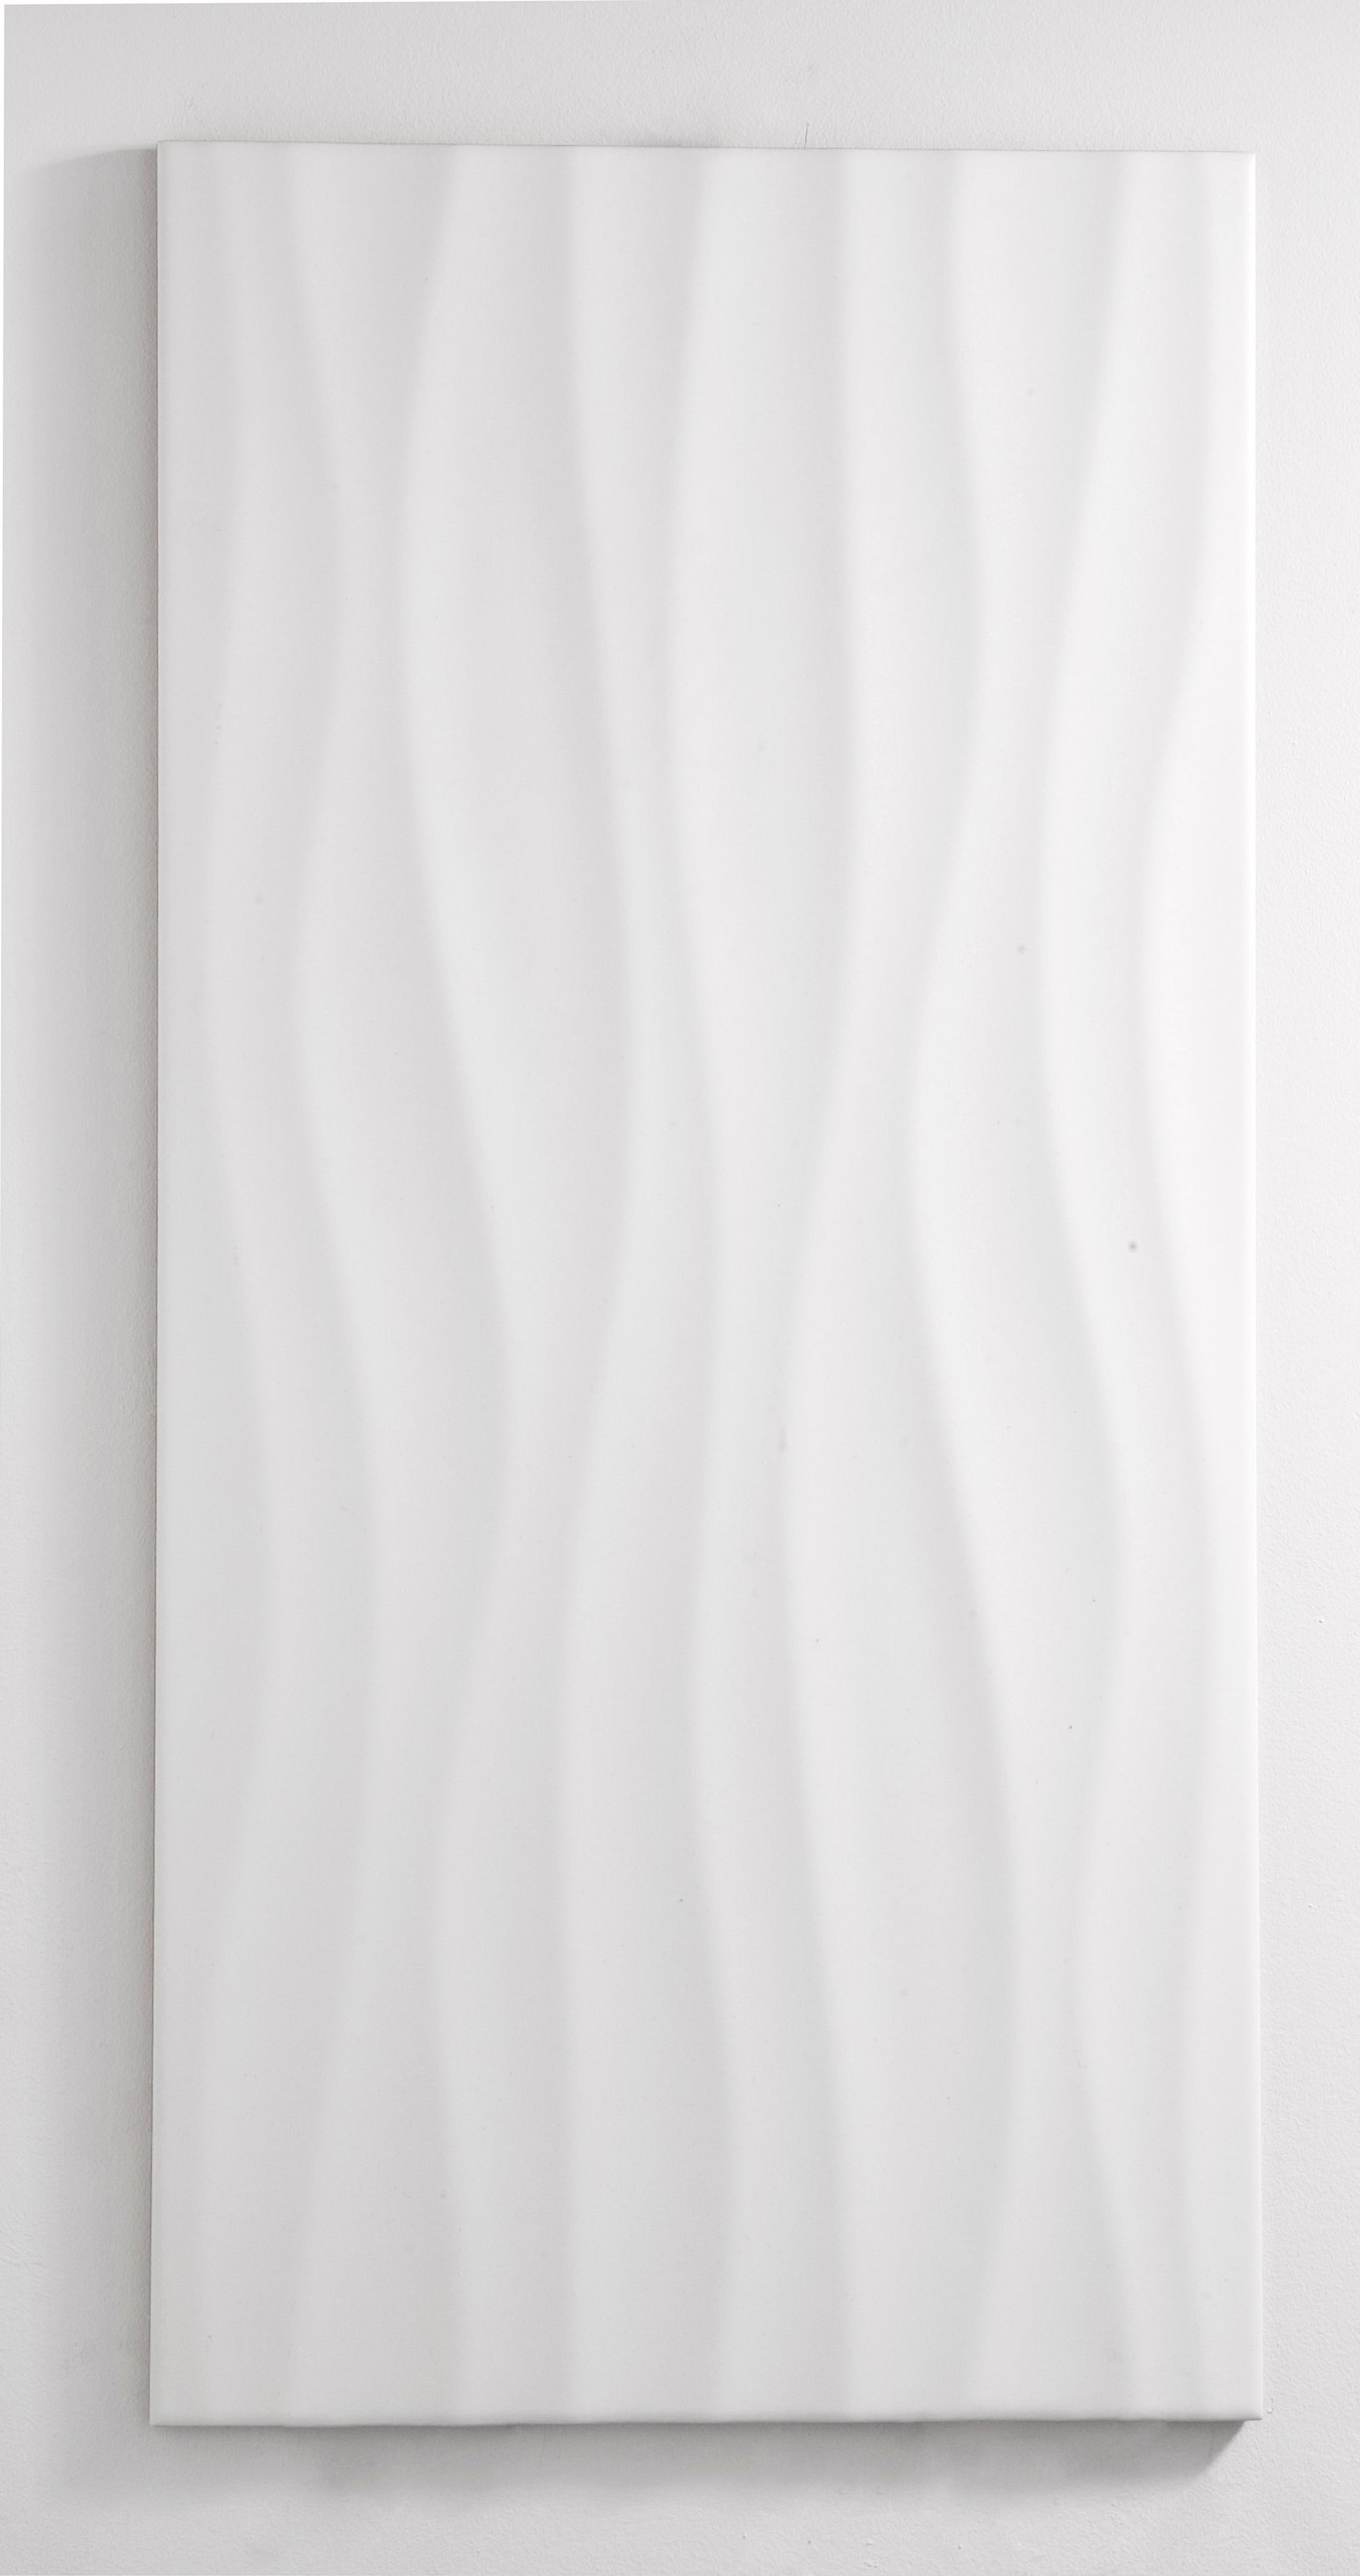 Faience Mur Uni Blanc Mat L 25 X L 50 Cm Hawai Wave Leroy Merlin